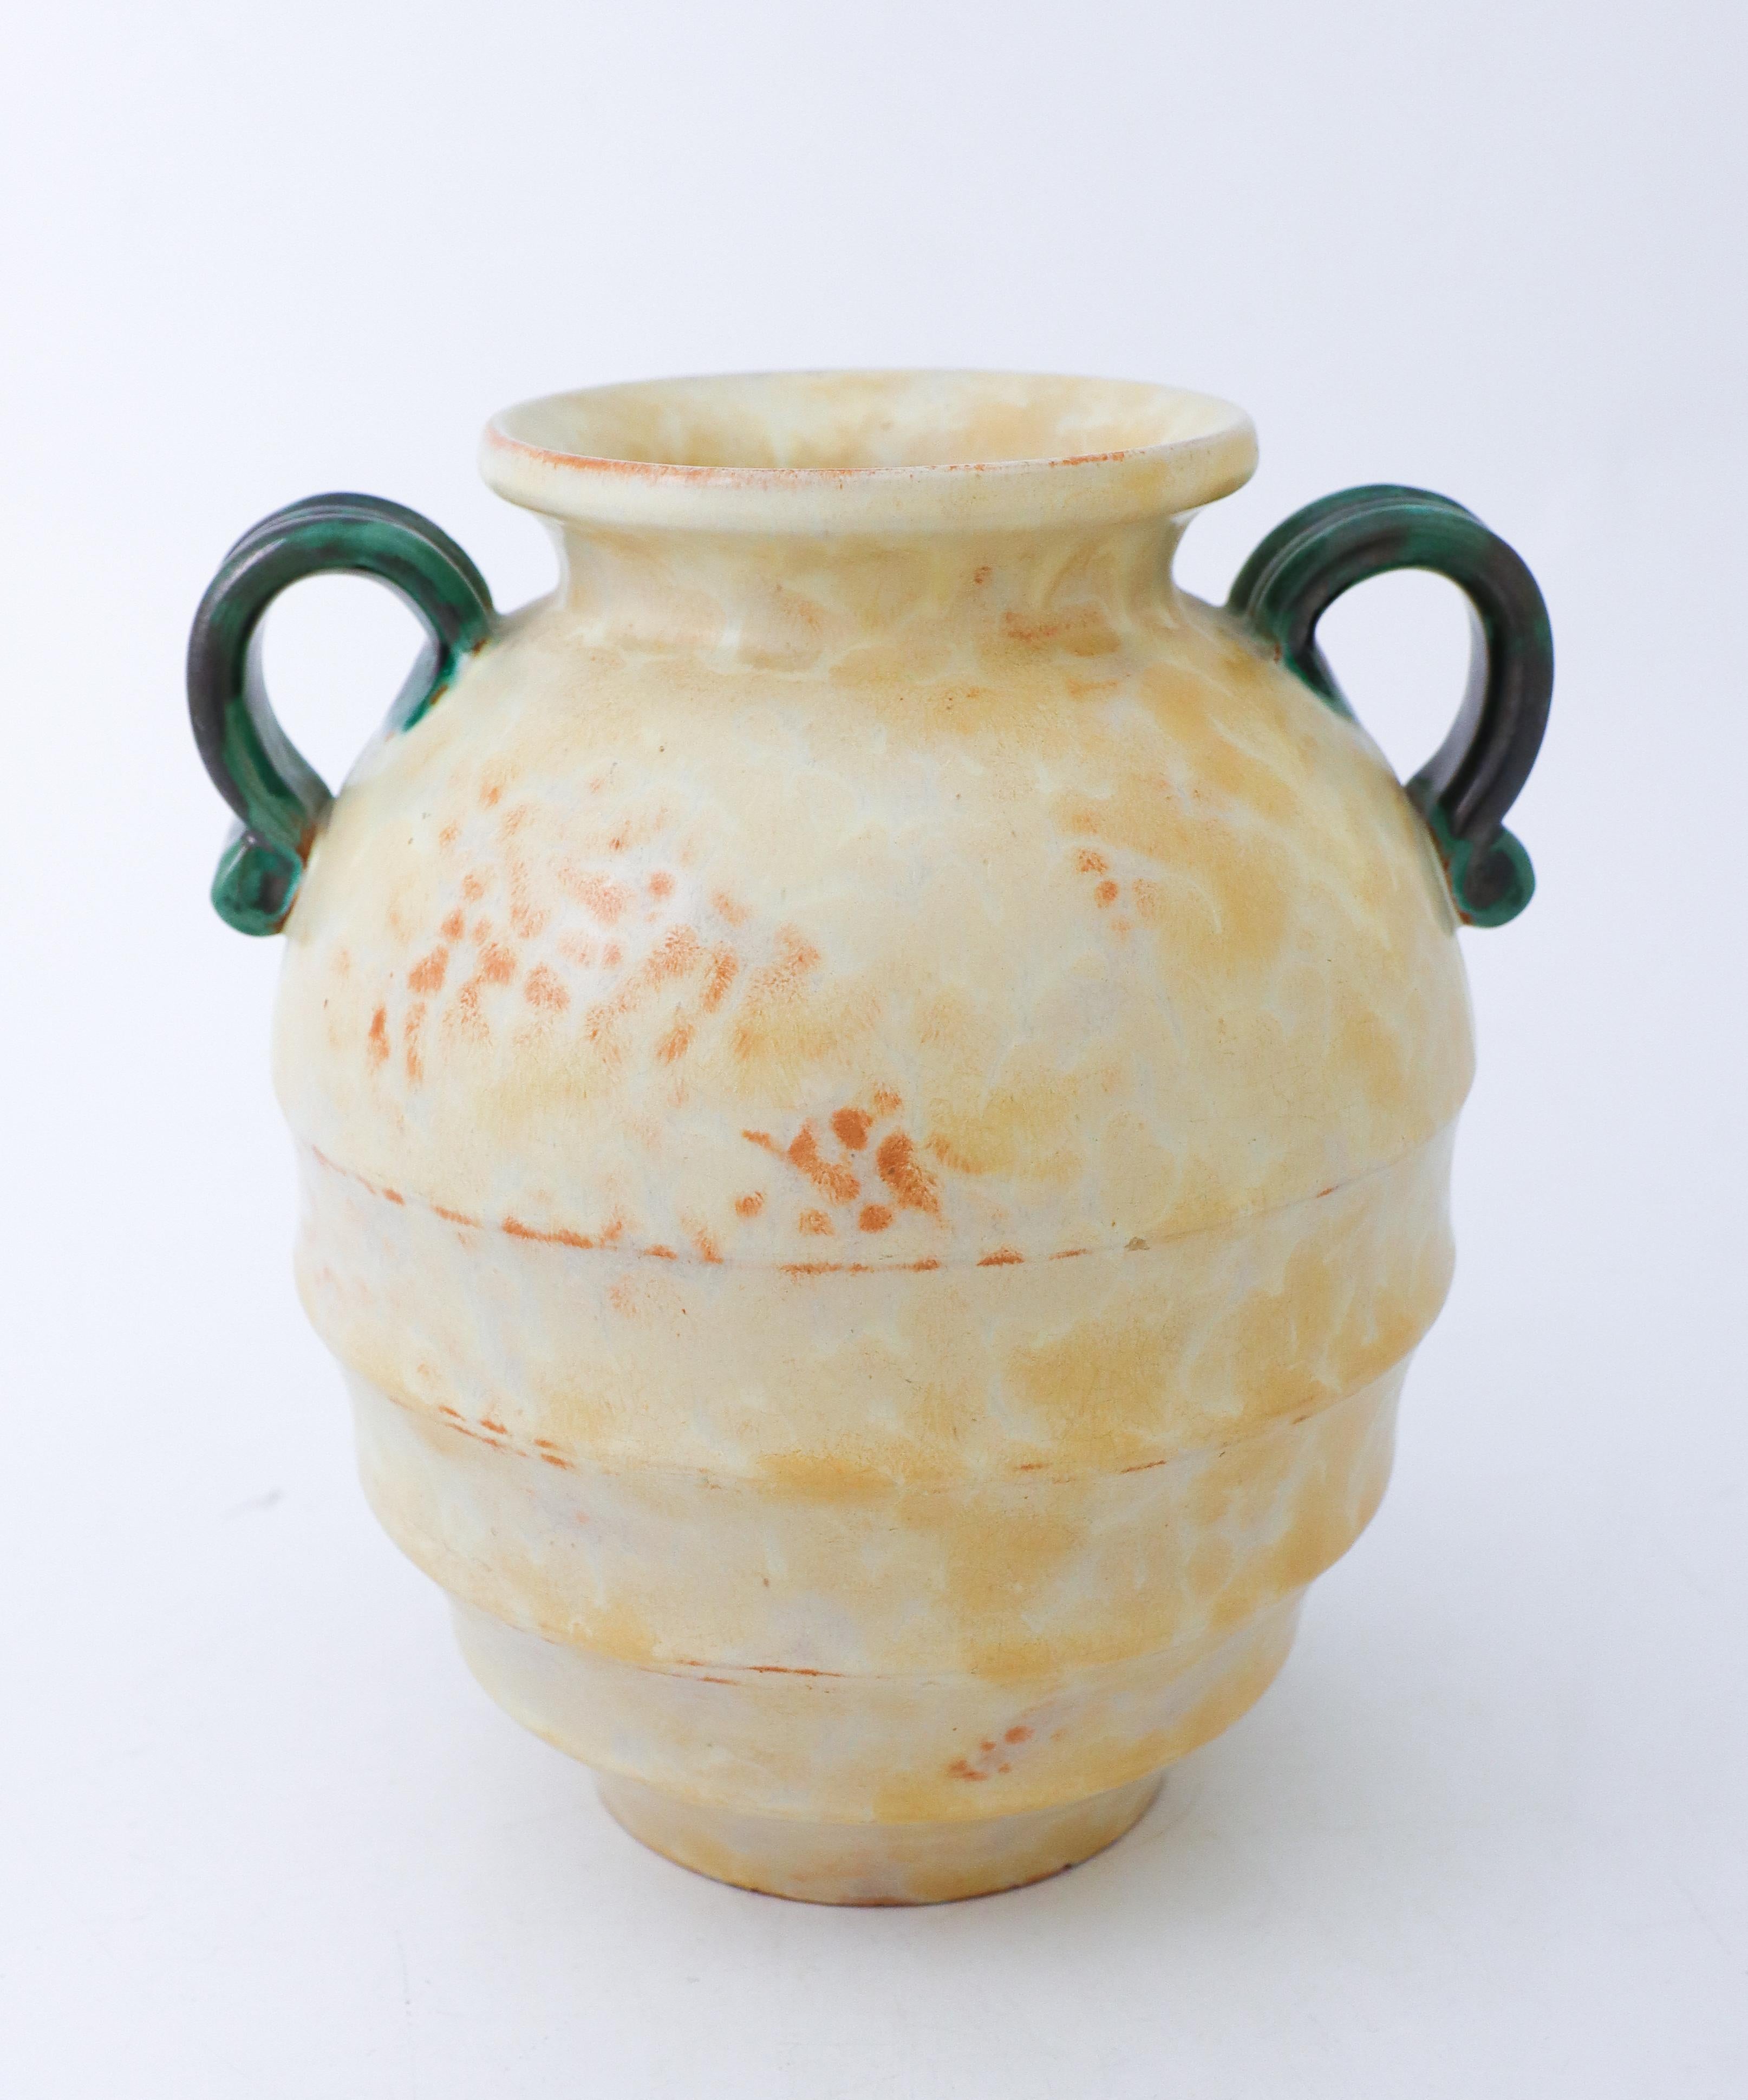 Ce magnifique vase en céramique en forme d'urne romaine classique a été conçu à Upsala Ekeby dans les années 1930. Il mesure 21,5 cm de haut et environ 18,5 cm de diamètre. Il est en très bon état, à l'exception de quelques petits éclats près de la